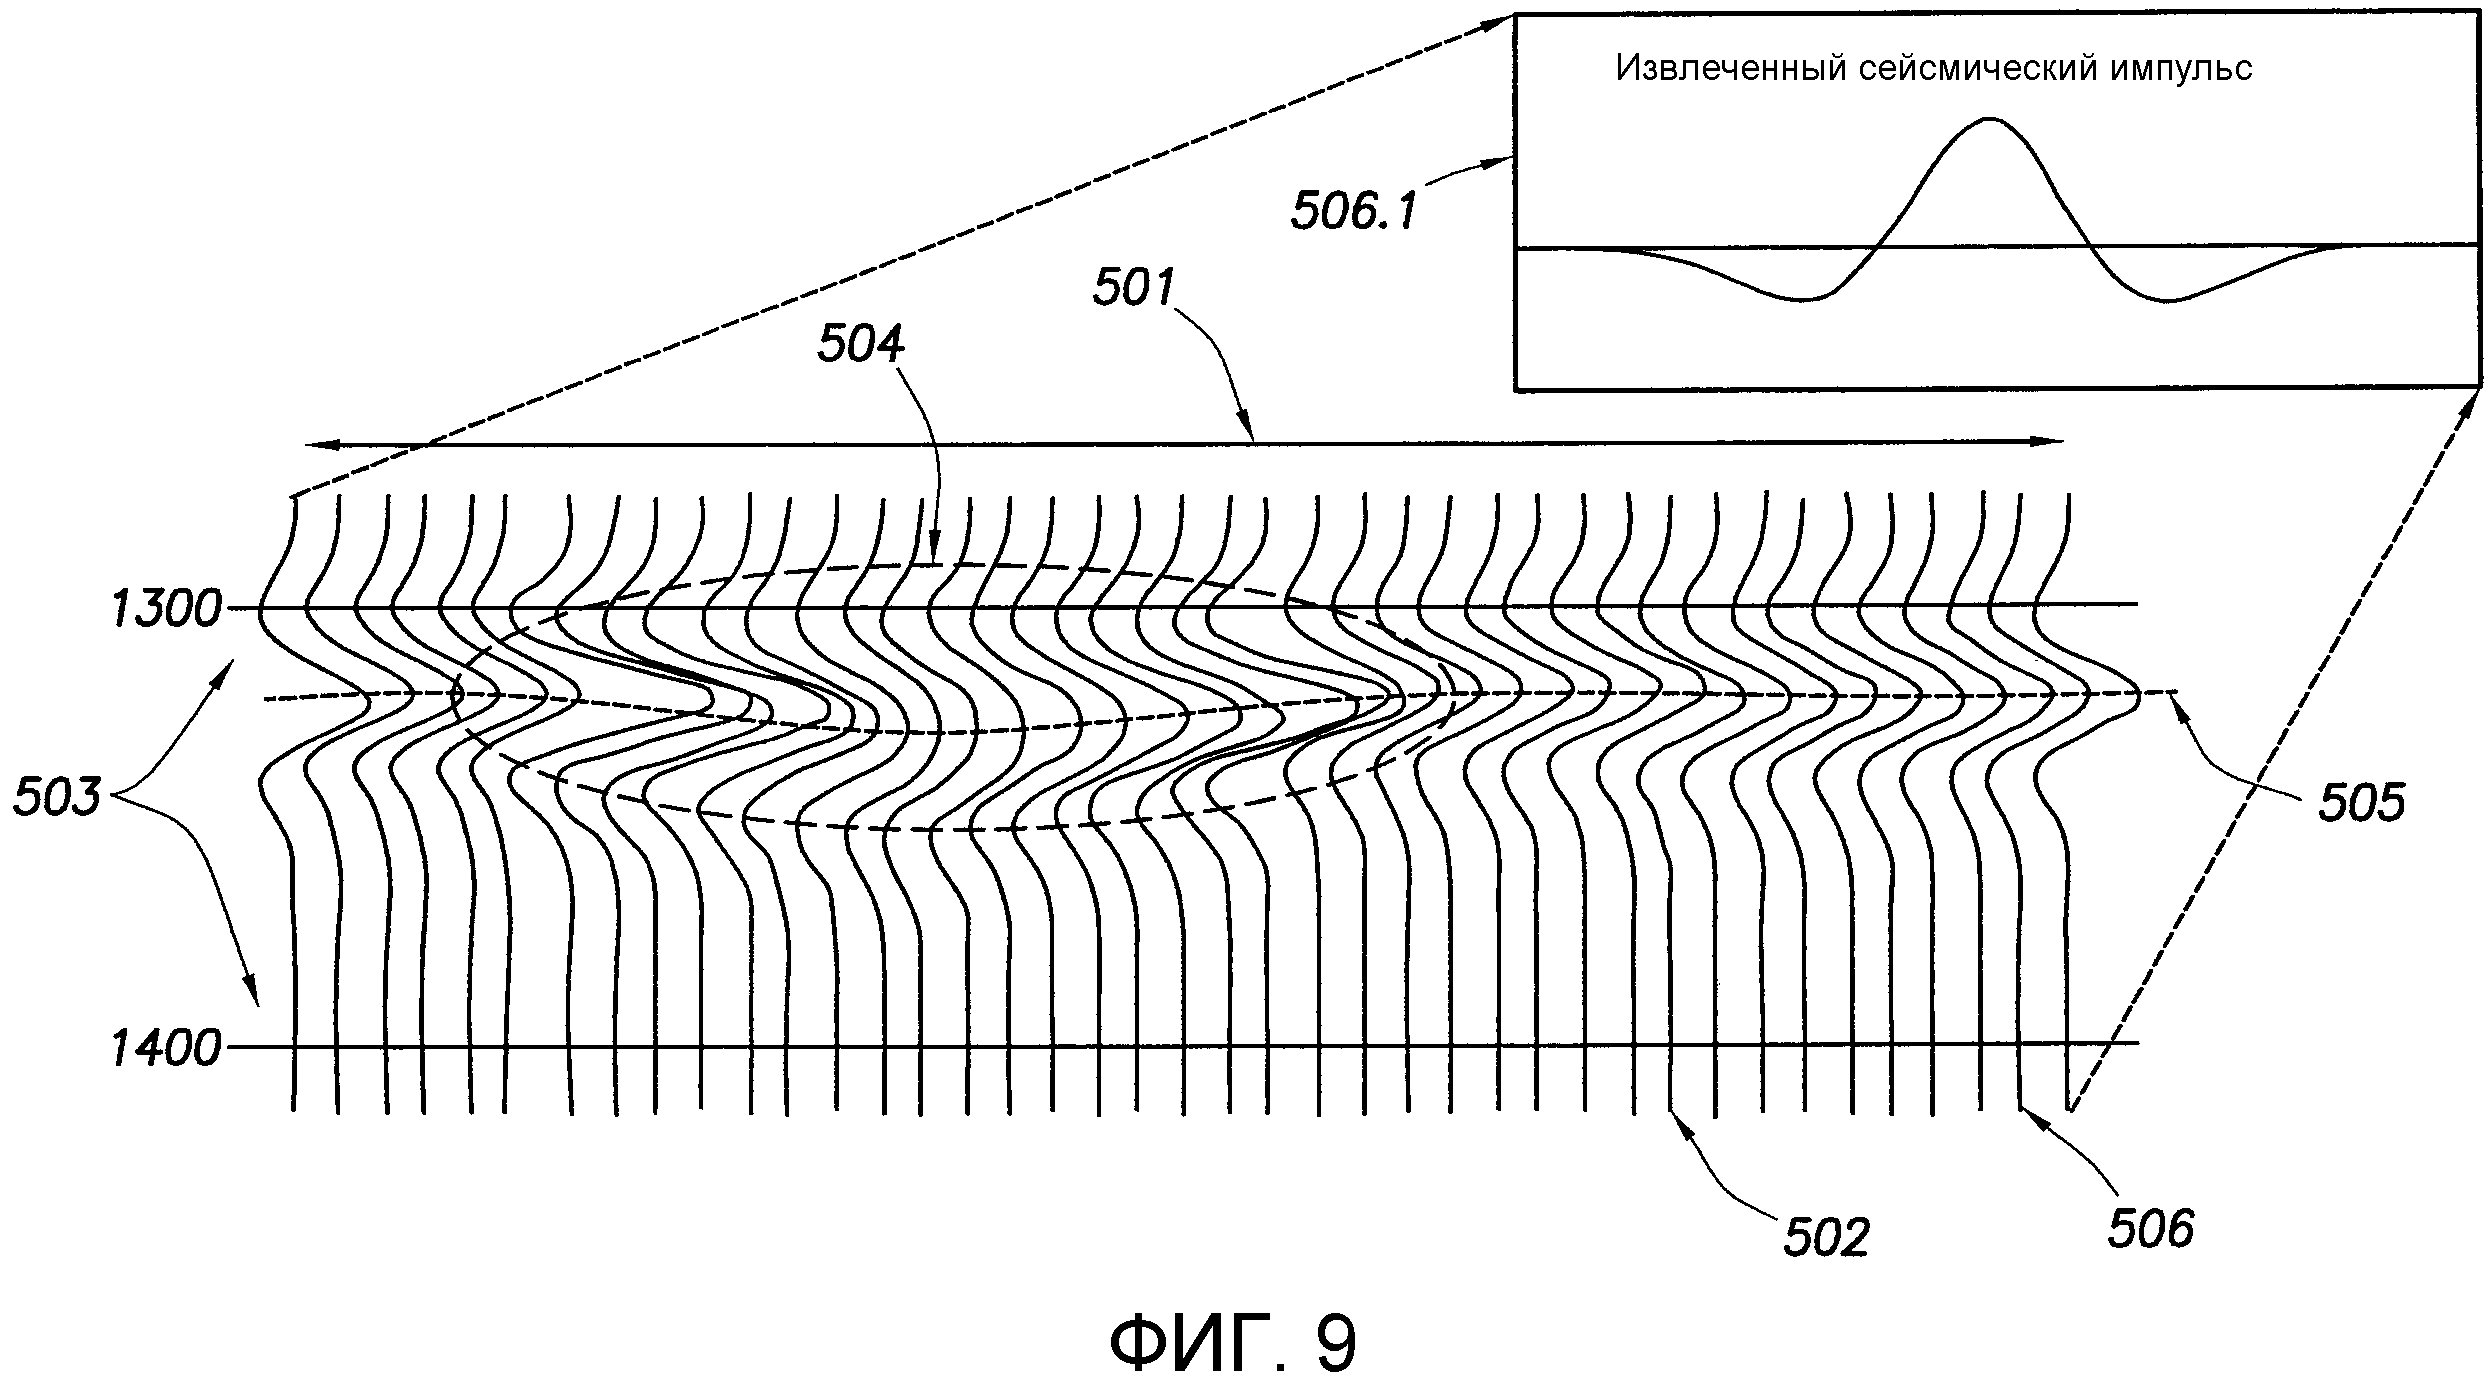 Поля помех. Сейсморазведка методом преломленных волн. Сейсмический сенсор Seismic m16. Нуль фазовый Импульс в сейсмике. Импульсы сигнала ctcvjhfpdtlrf.